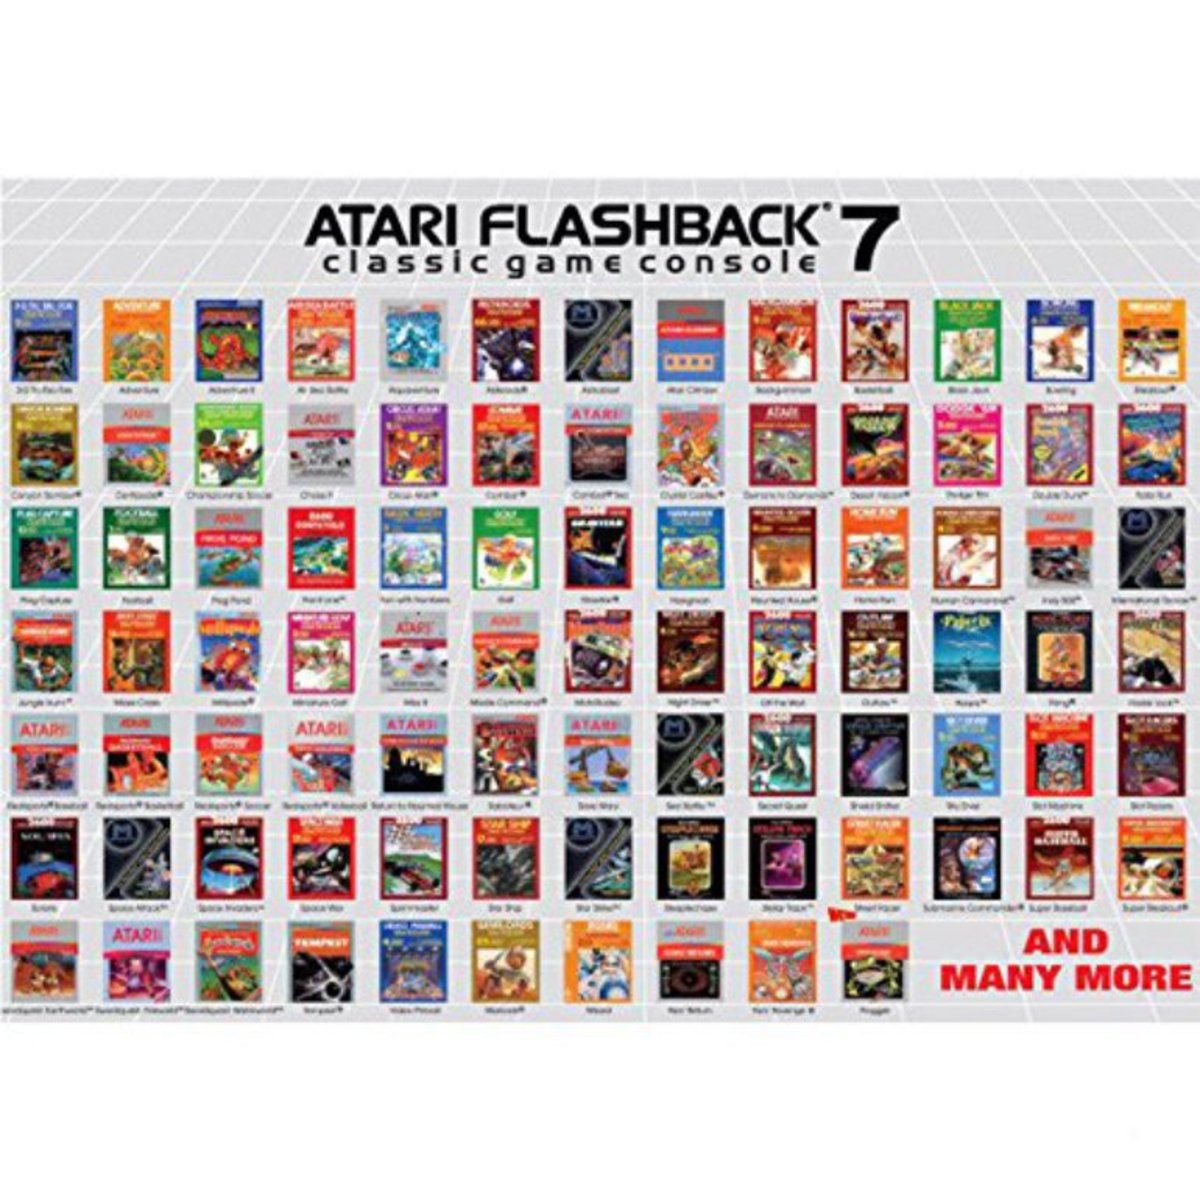 Estos son algunos de los juegos que incluye la consola Atari Flashback 7